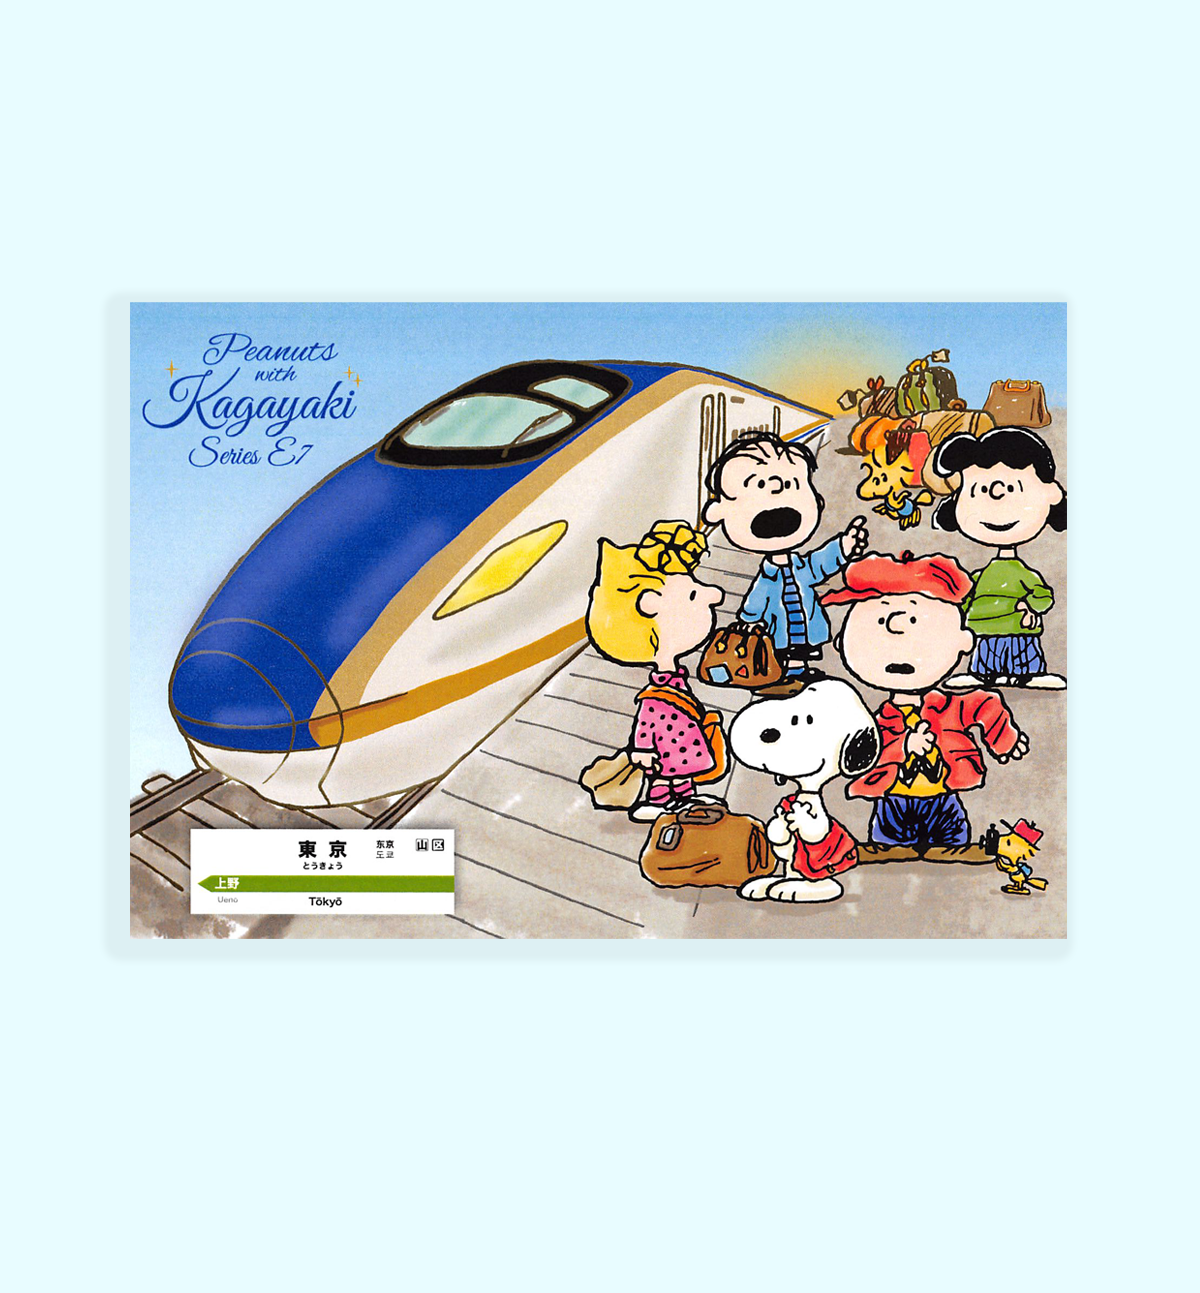 Snoopy With Kagayaki Memopad - Limited Edition [Serie E7]